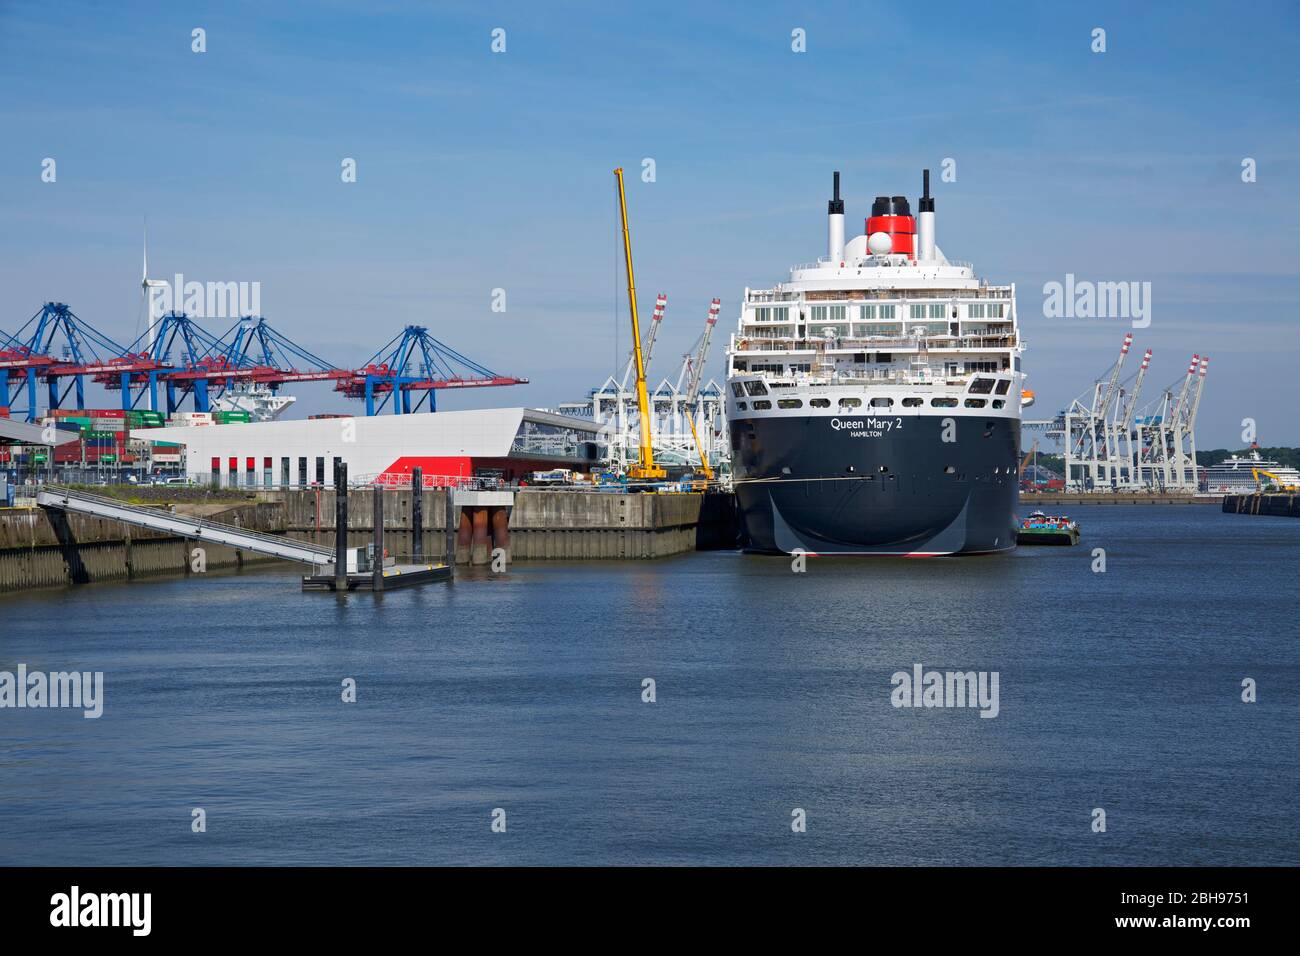 La Regina Maria 2 della compagnia di navigazione Cunard presso il terminal delle navi da crociera Steinwerder. Dietro di esso i ponti container del terminale Tollerort. Foto Stock